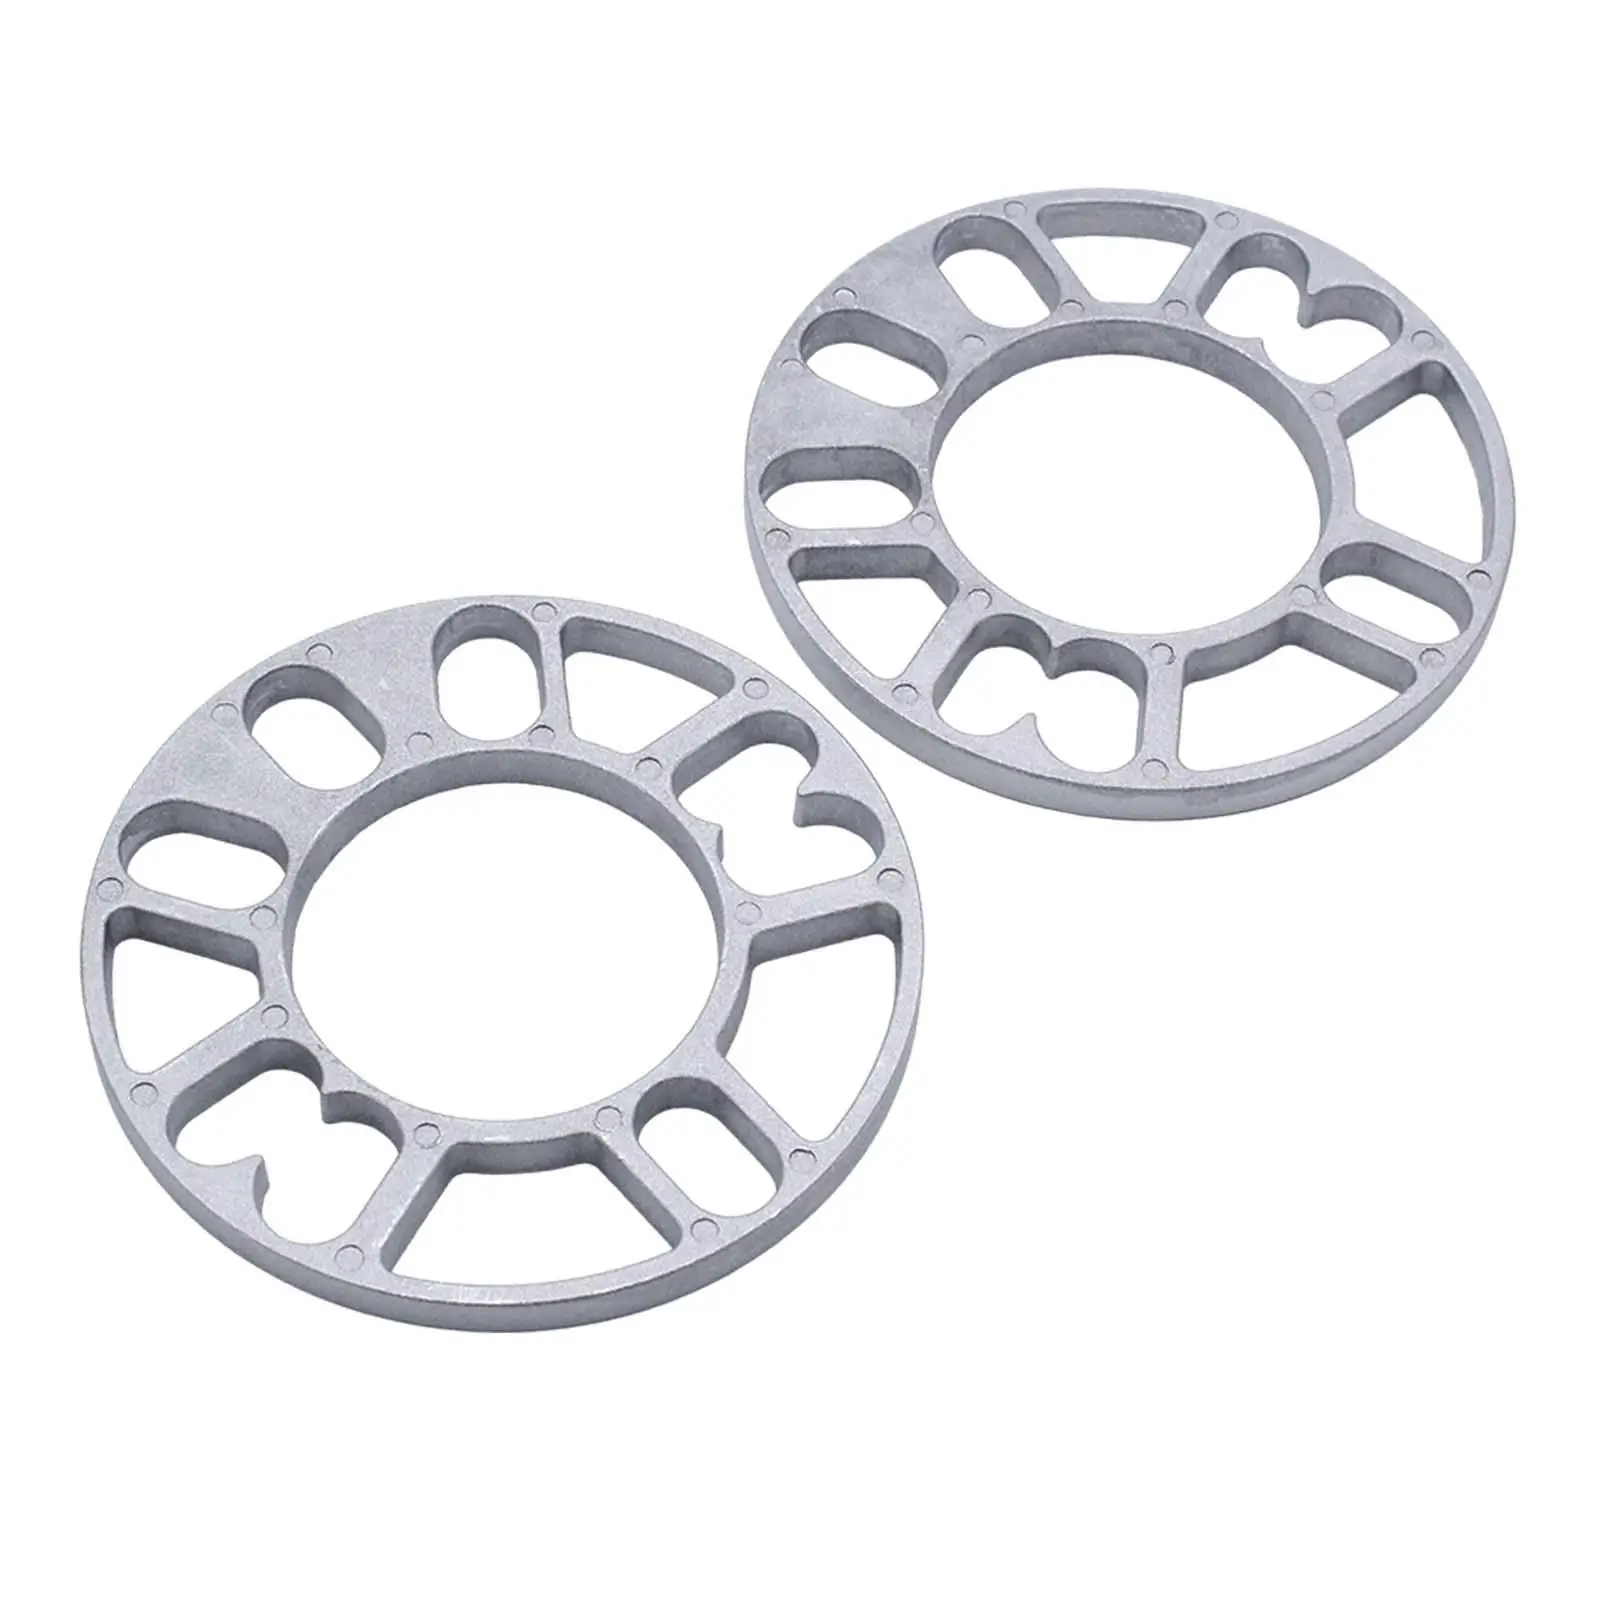 2 Pieces Hub Centric Wheel Spacers Diameter 15cm Aluminum Alloy Accessories for 4/5 Stud Wheel Durable Convenient Assemble